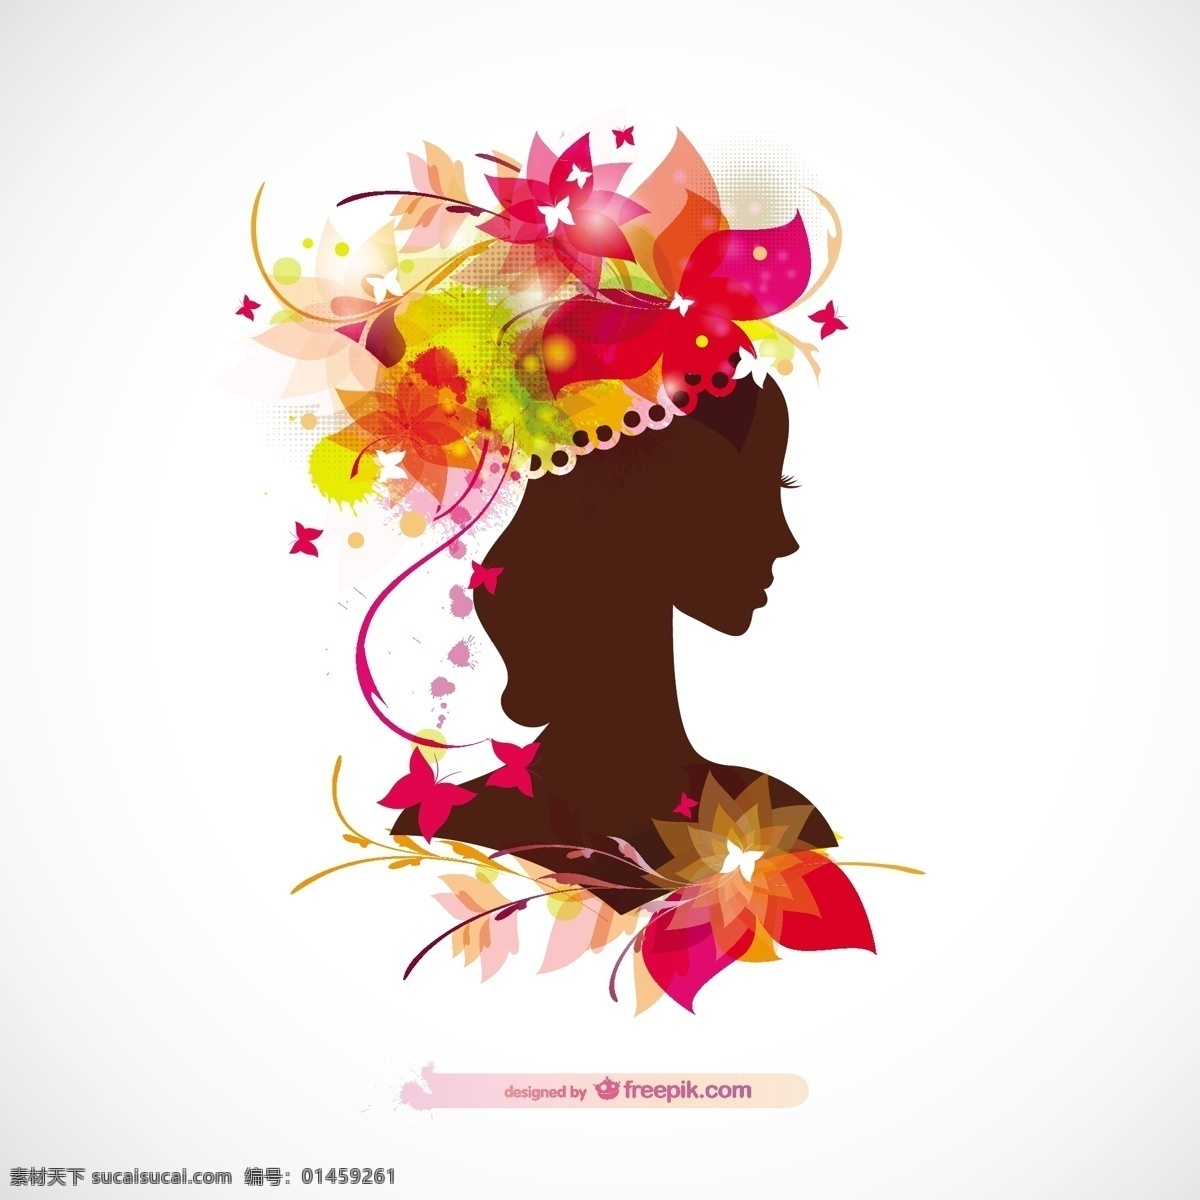 光泽 女人 轮廓 线 花 背景 花卉 时尚 自然 模板 美容 面部 花卉背景 壁纸 布局 人物 元素 白色